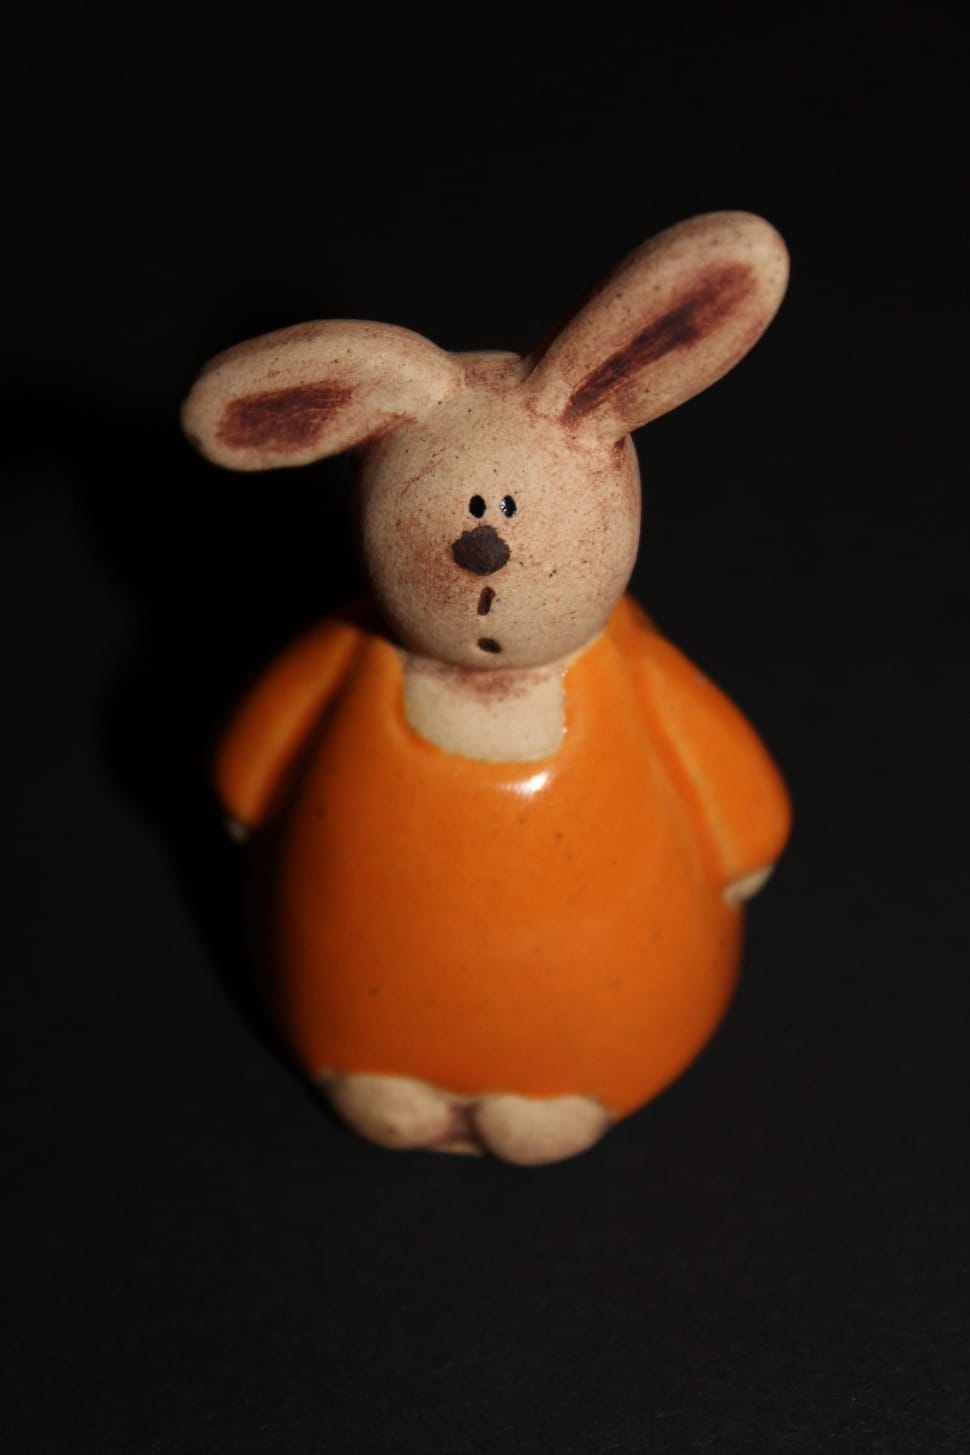 orange and white ceramic rabbit figure preview